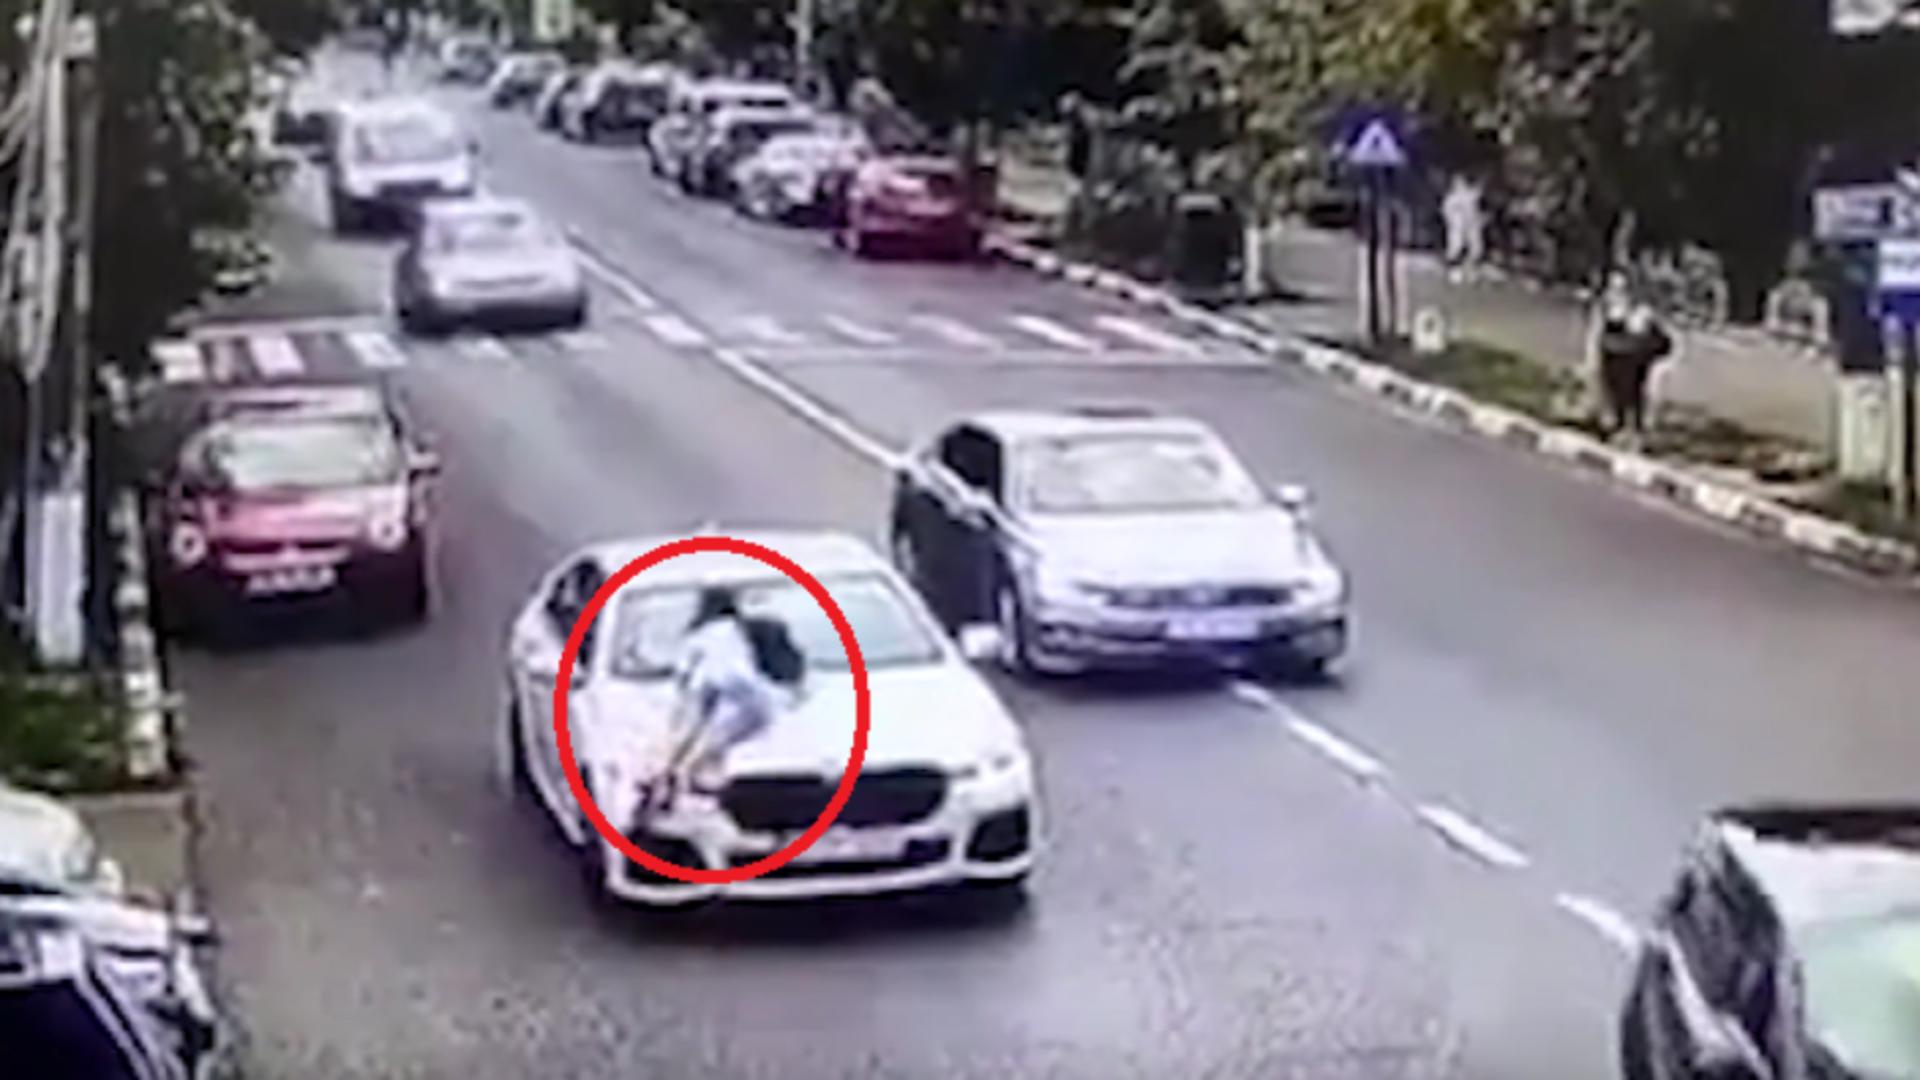  Reacția neașteptata a unei femei care si-a prins soțul cu amanta în mașina. Poliția a amendat-o/ Captură video